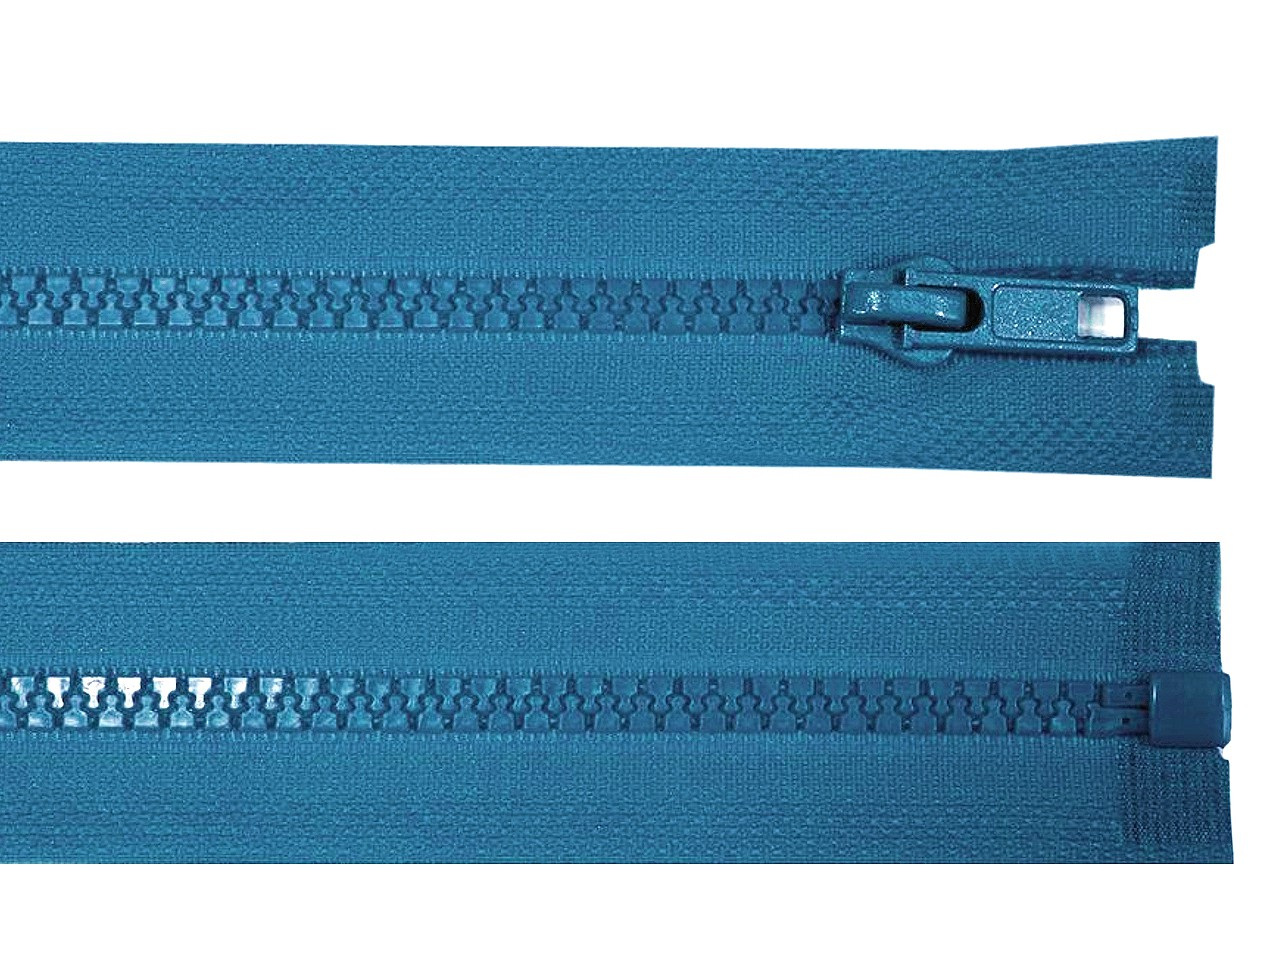 Kostěný zip No 5 délka 45 cm bundový, barva 216 modrá sytá